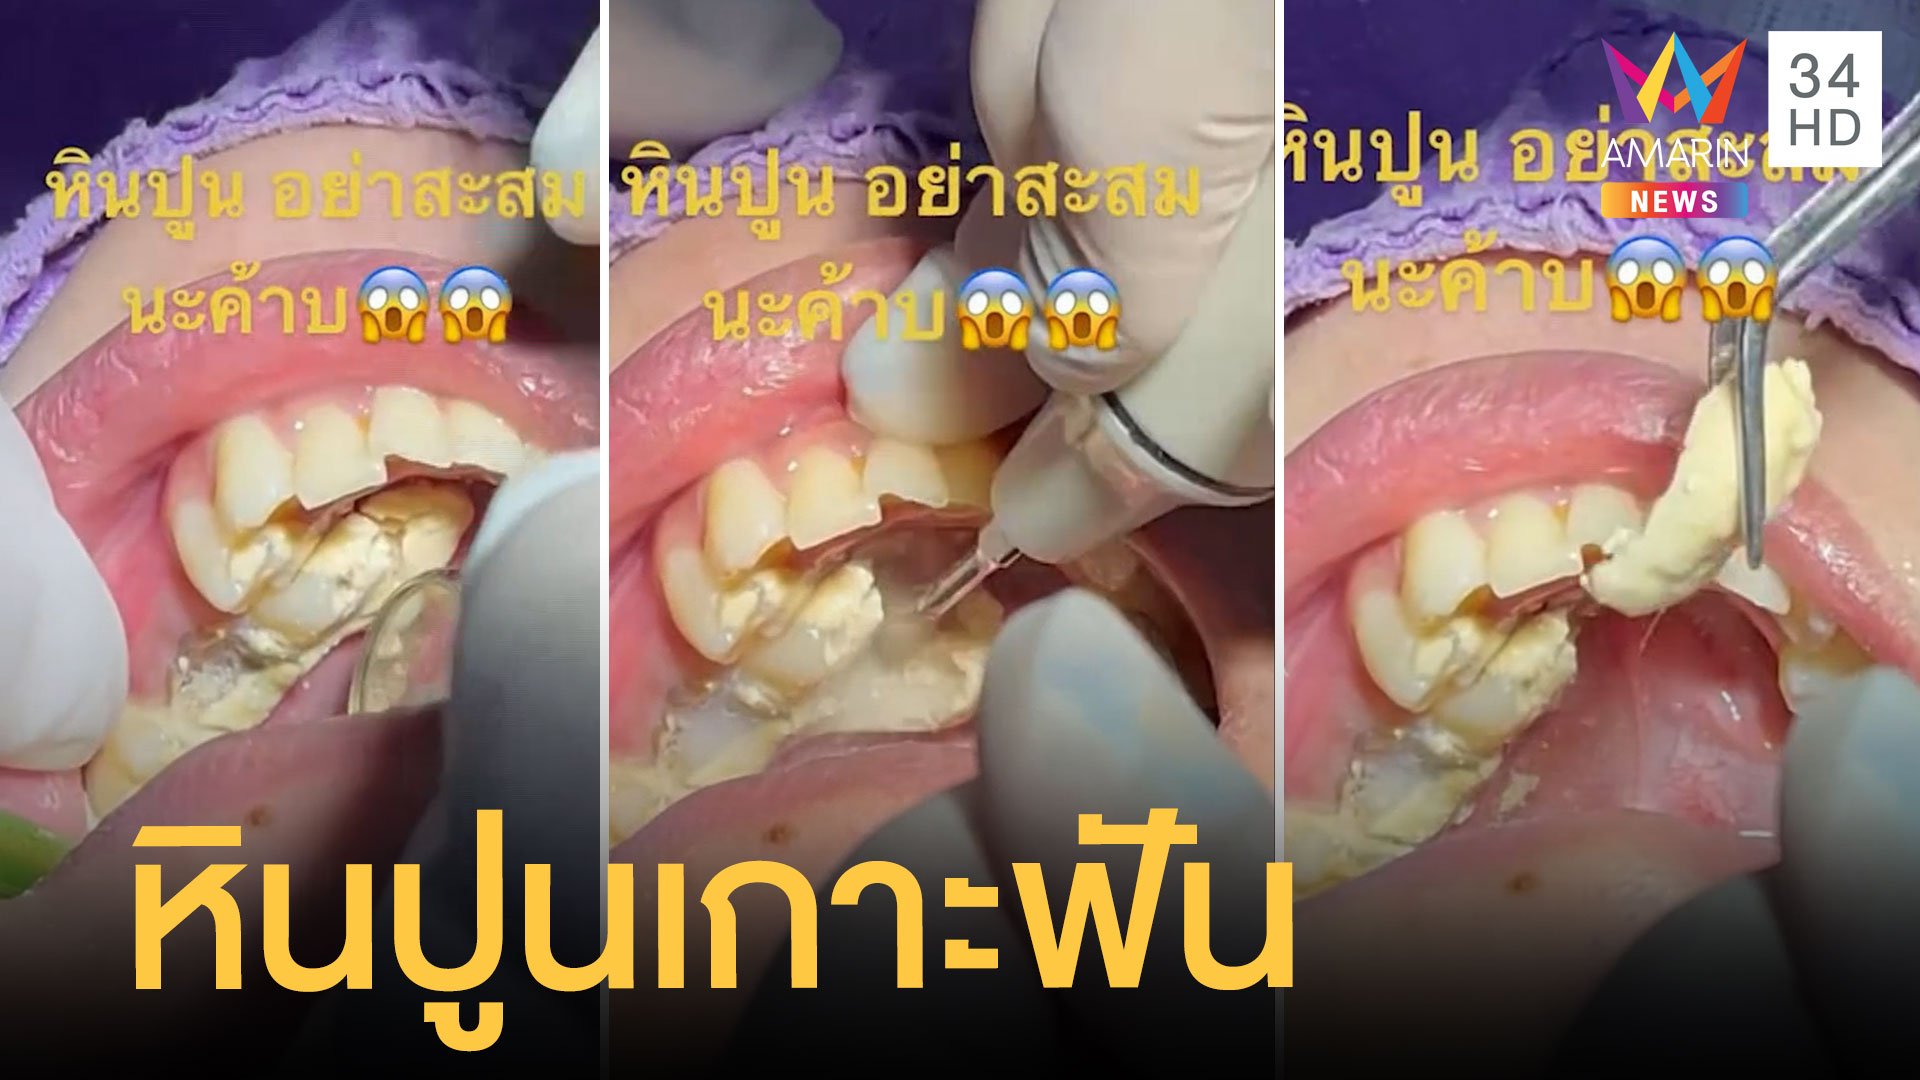 หมอฟันโพสต์คลิปหินปูนเกาะฟันหนามาก | ข่าวอรุณอมรินทร์ | 20 ม.ค. 65 | AMARIN TVHD34